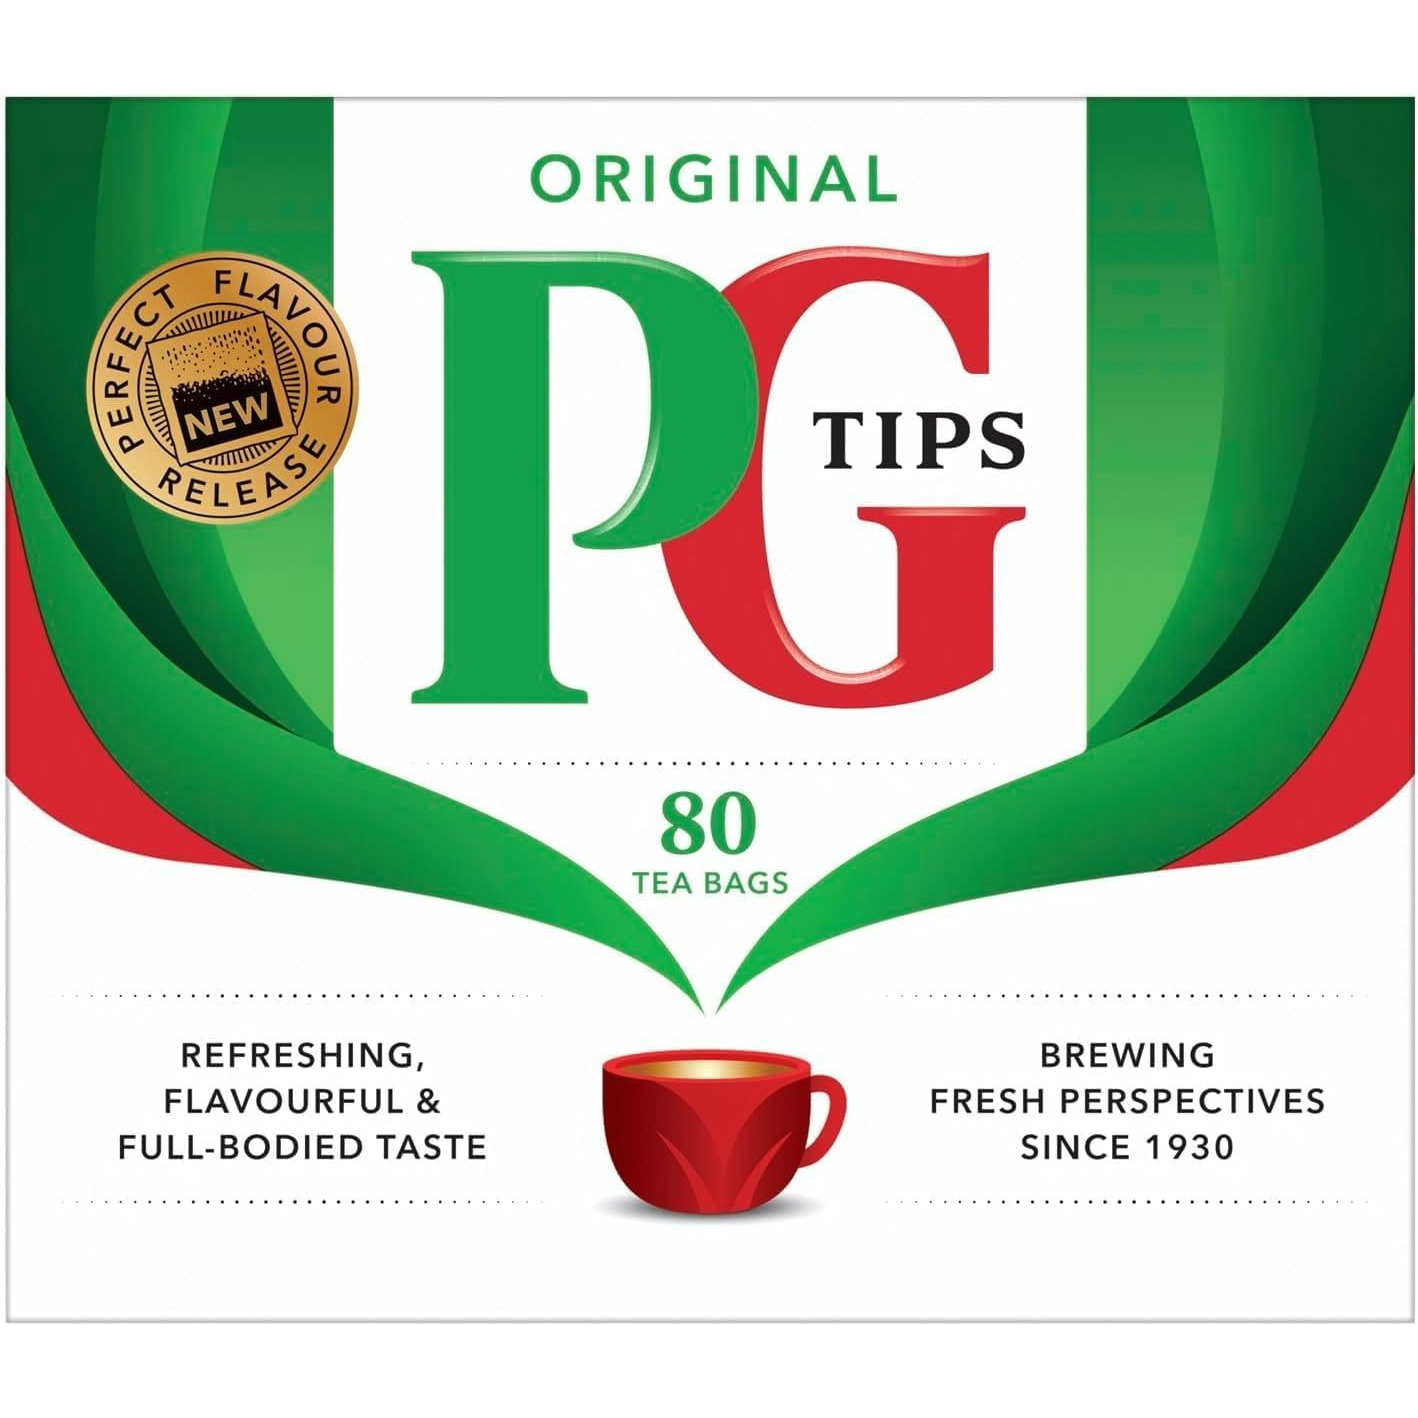 PG Tips Original Tea Bags 80 Bags - 232 Gm